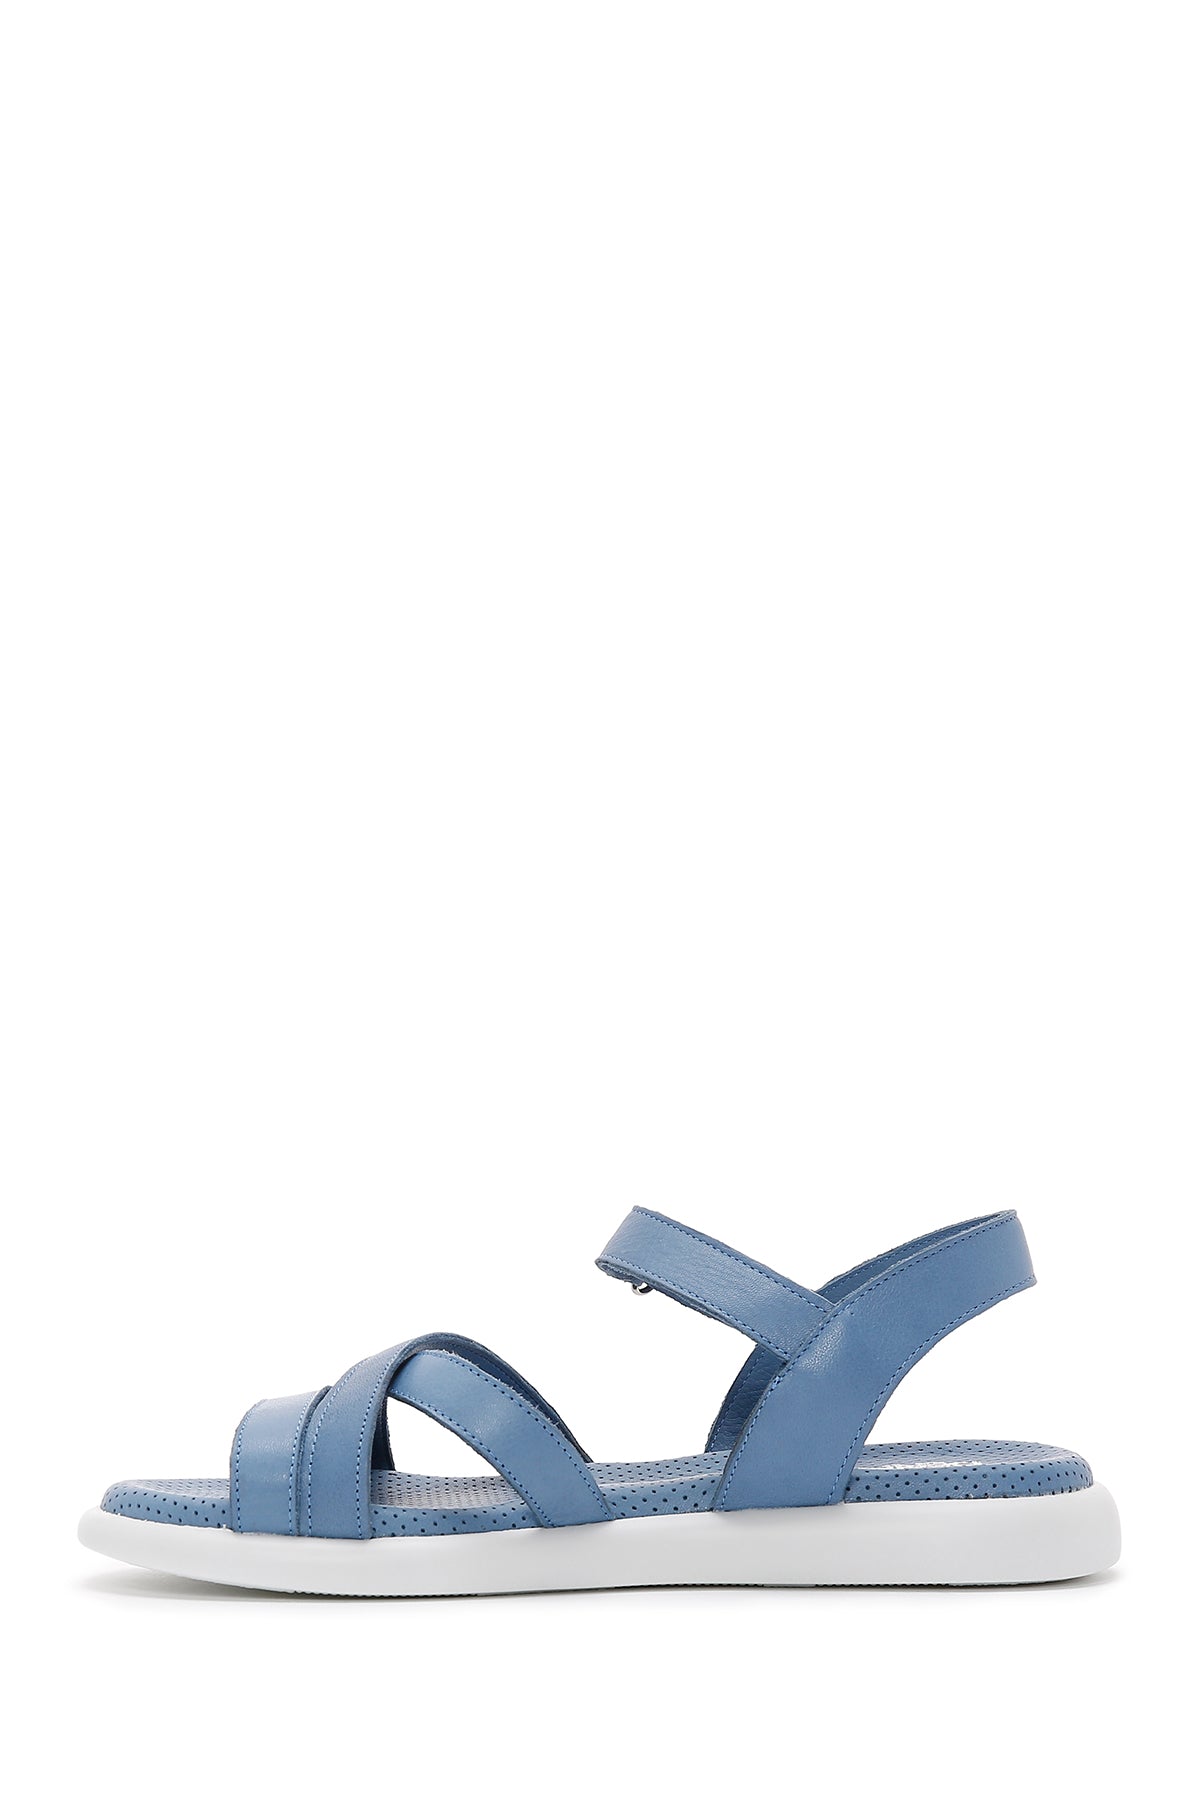 Kadın Mavi Deri Comfort Sandalet